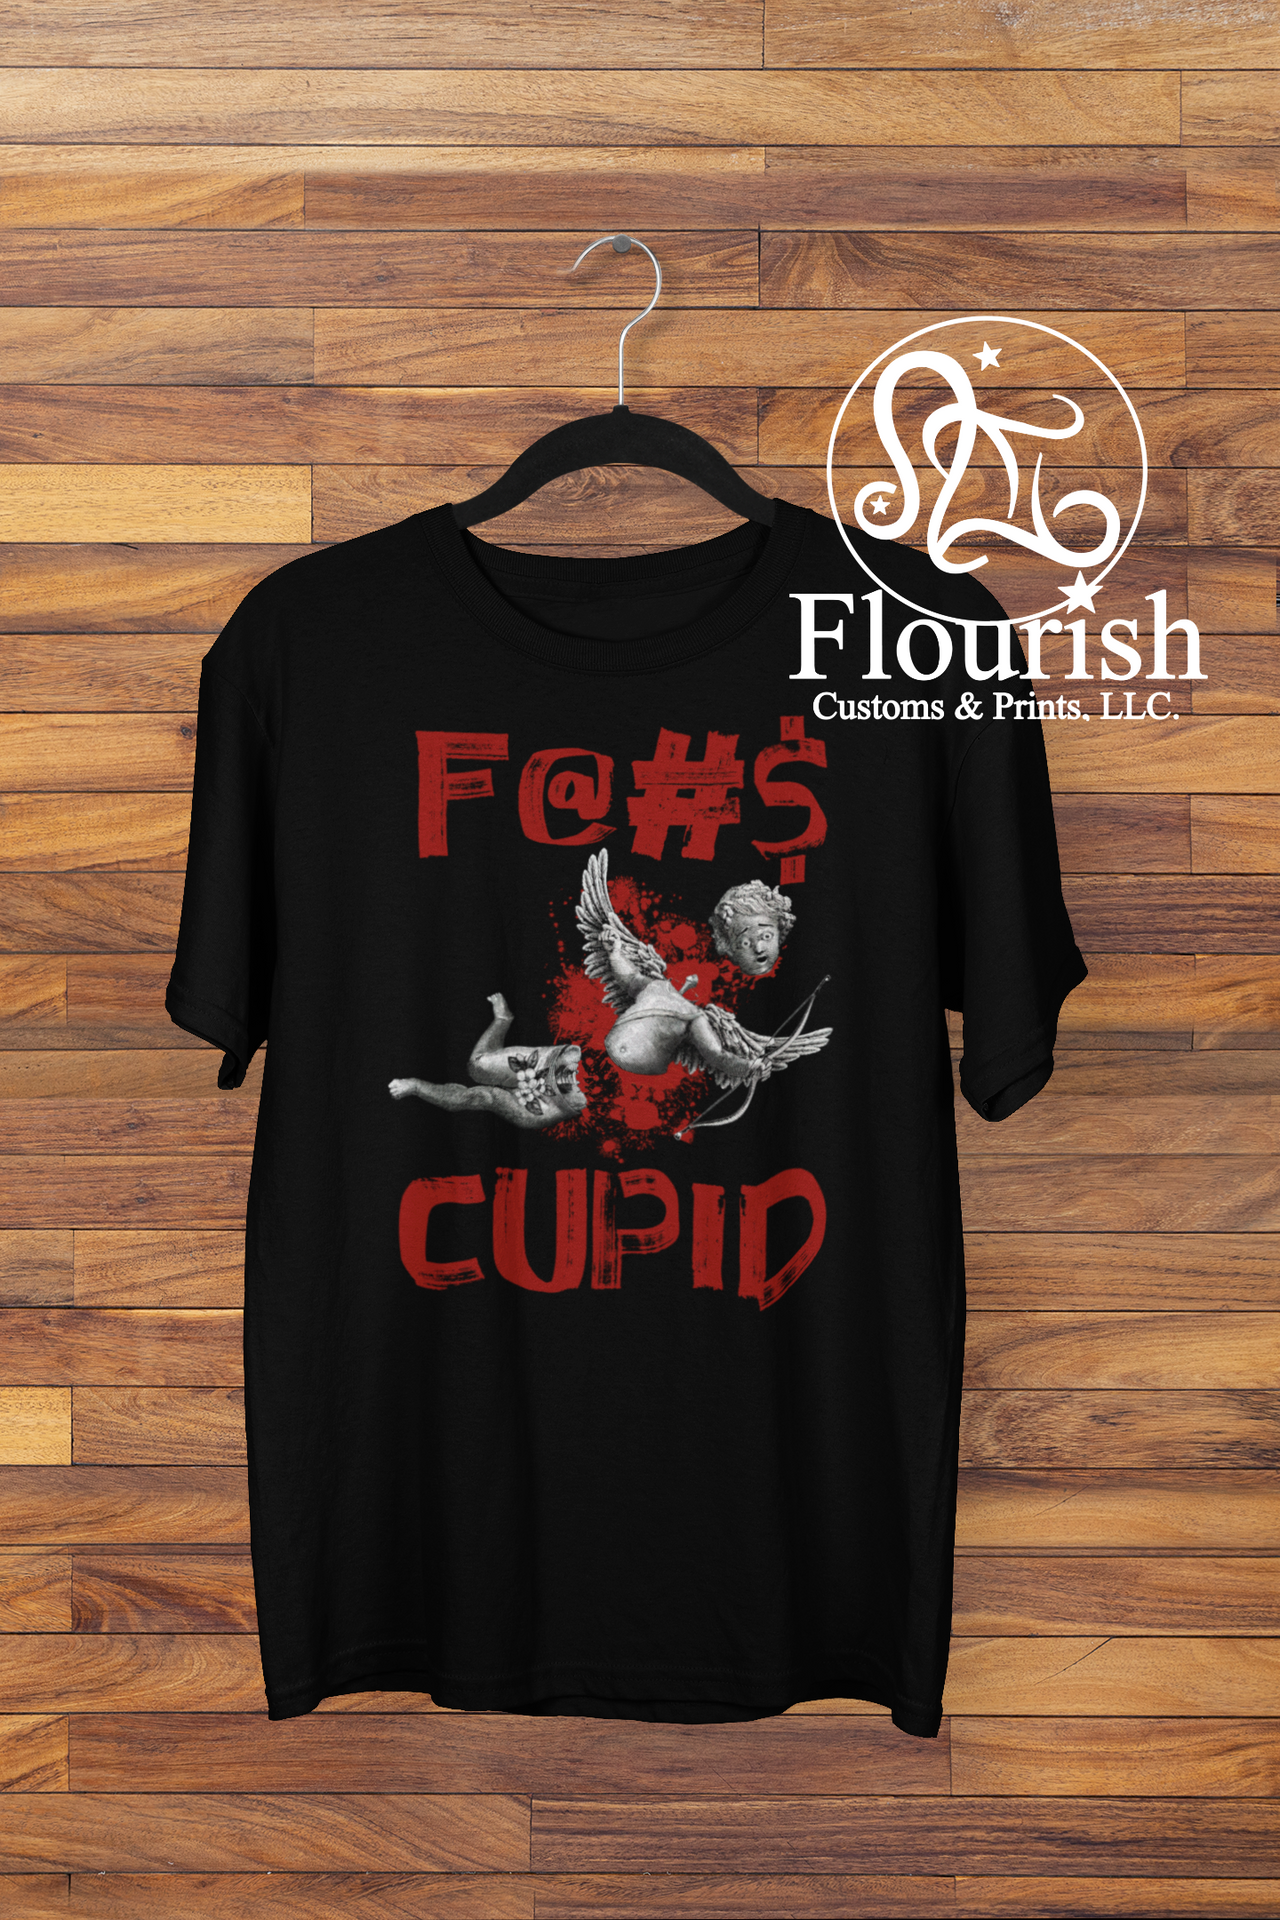 F@#$ Cupid Tee